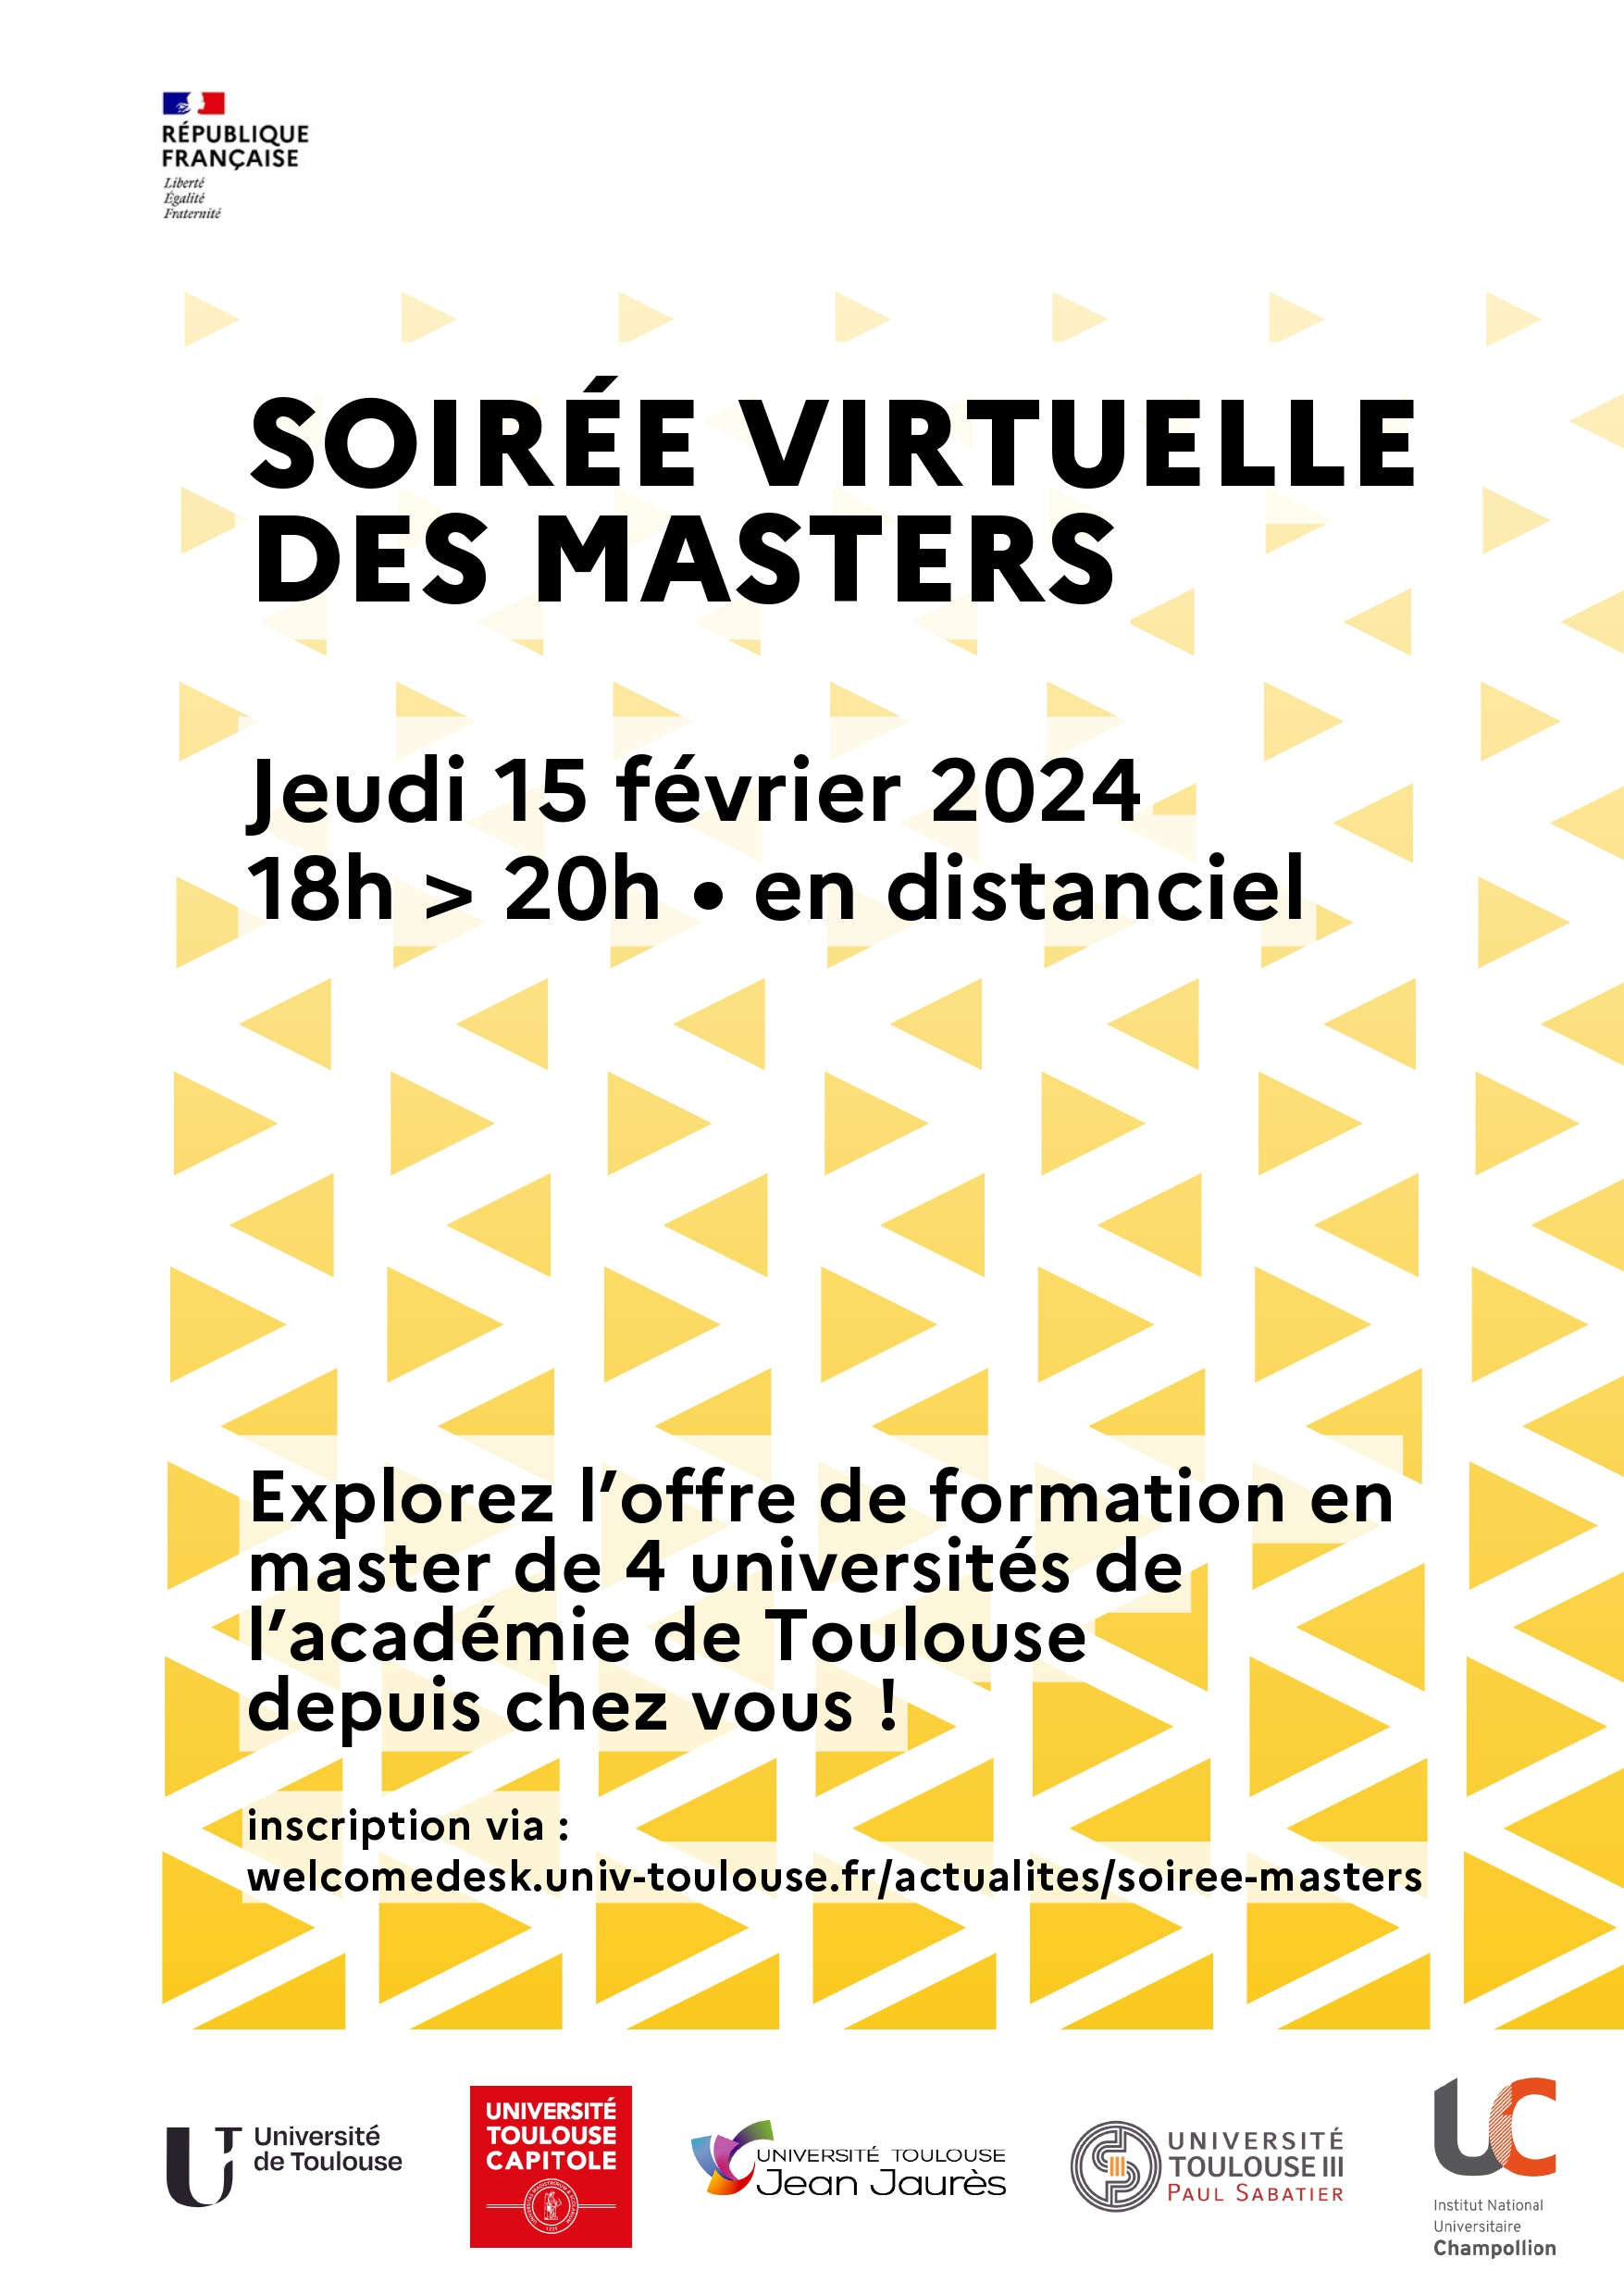 Soirée virtuelle des masters - jeudi 15 février 2023 de 18h à 20h